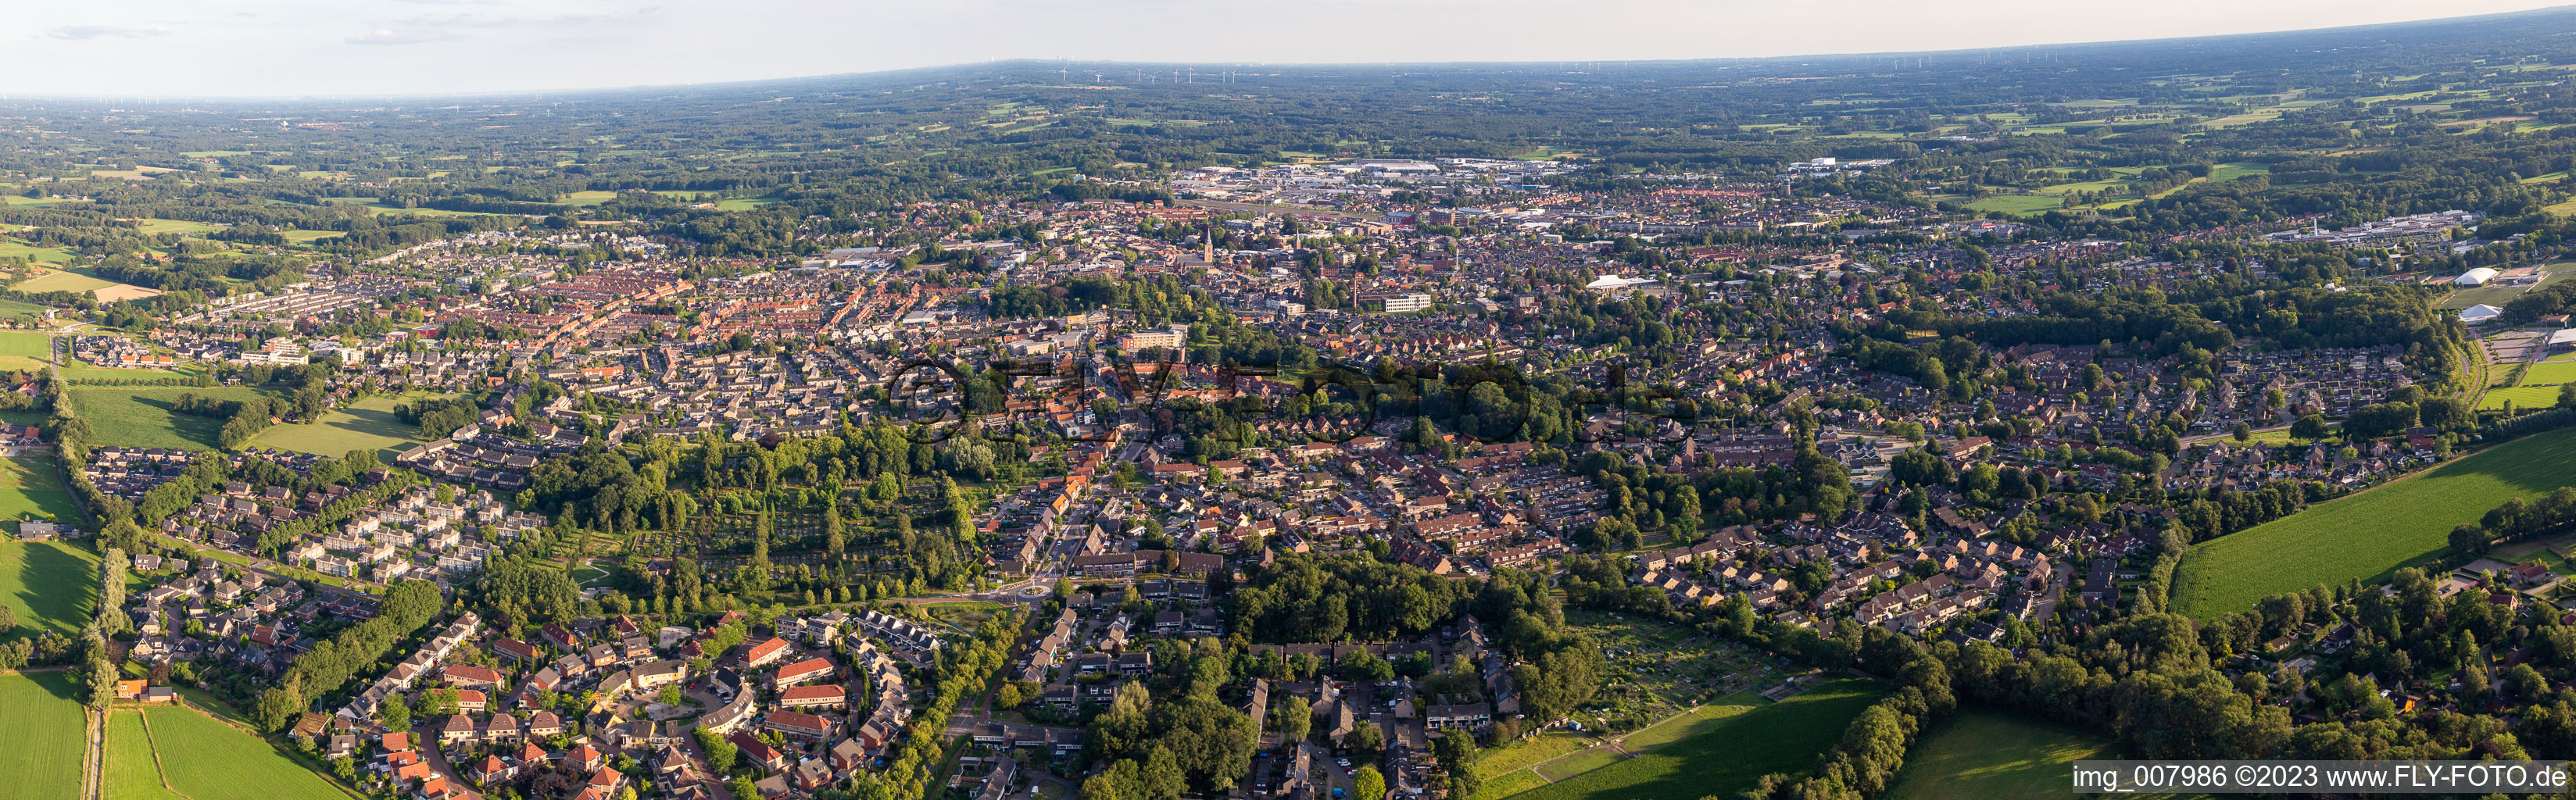 Vue aérienne de Panorama de la vue sur la ville du centre-ville à Winterswijk dans le département Gueldre, Pays-Bas